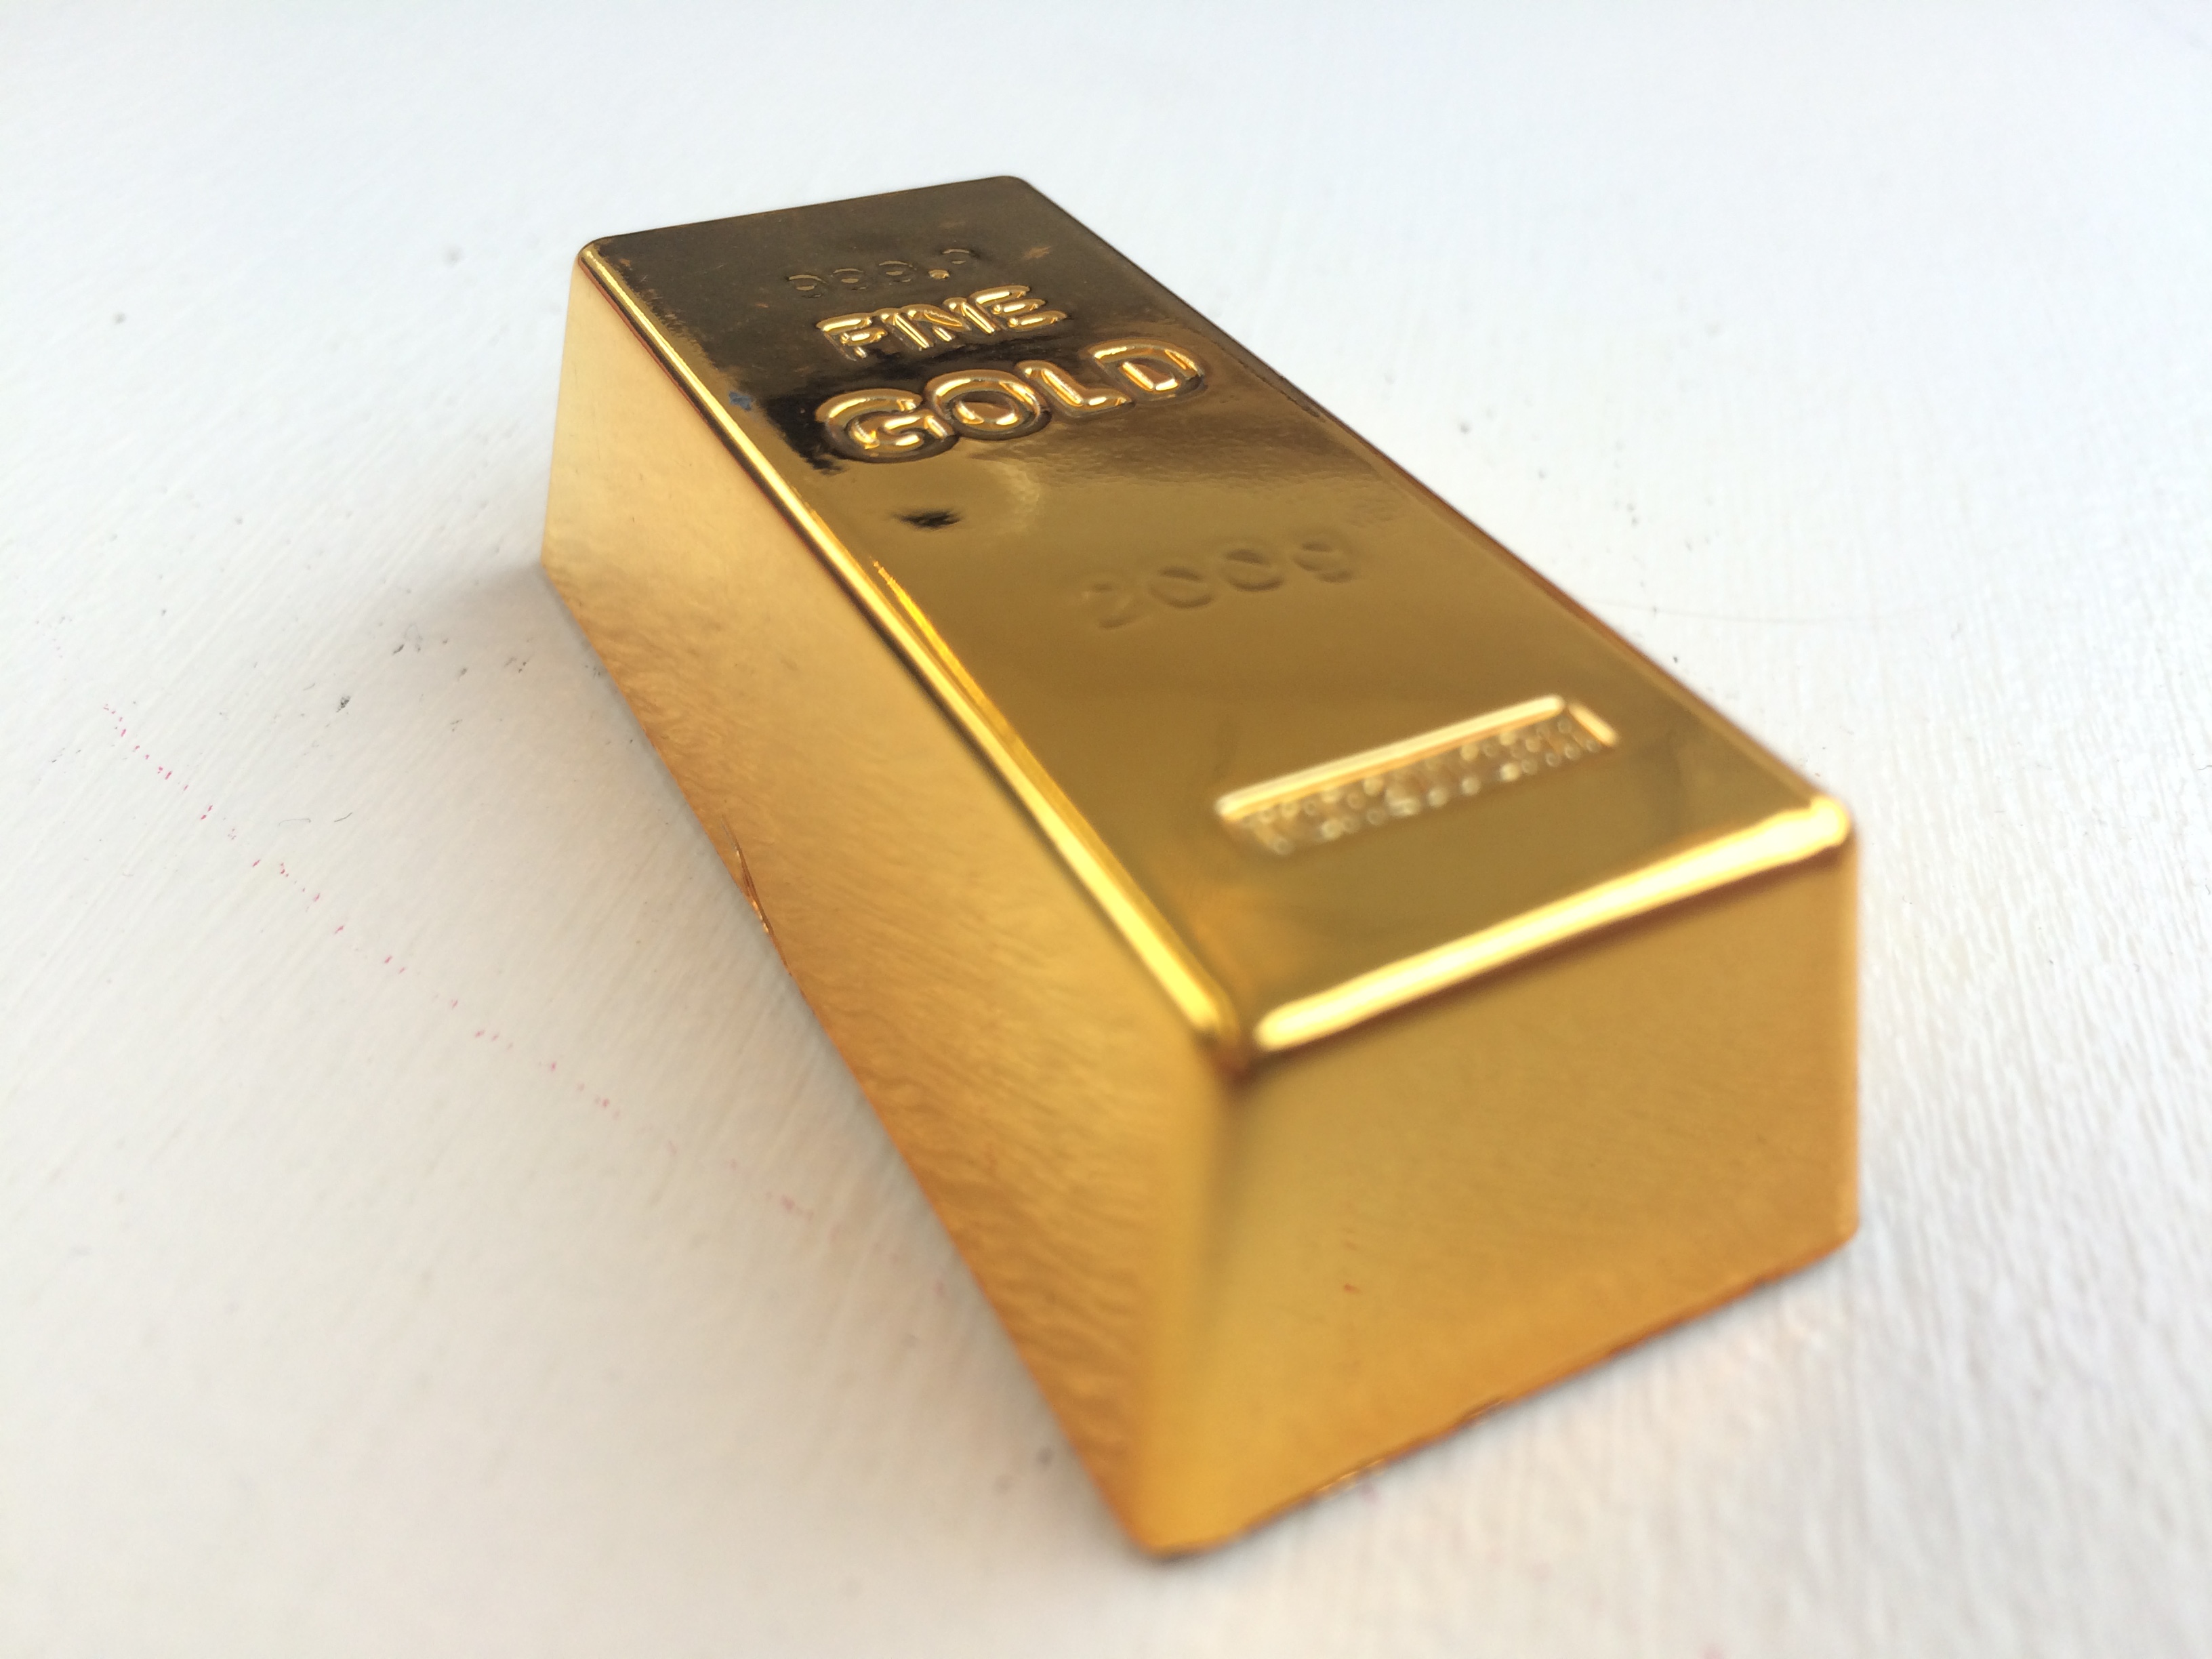 Gold Bar Gold Bar Materiality Domain.